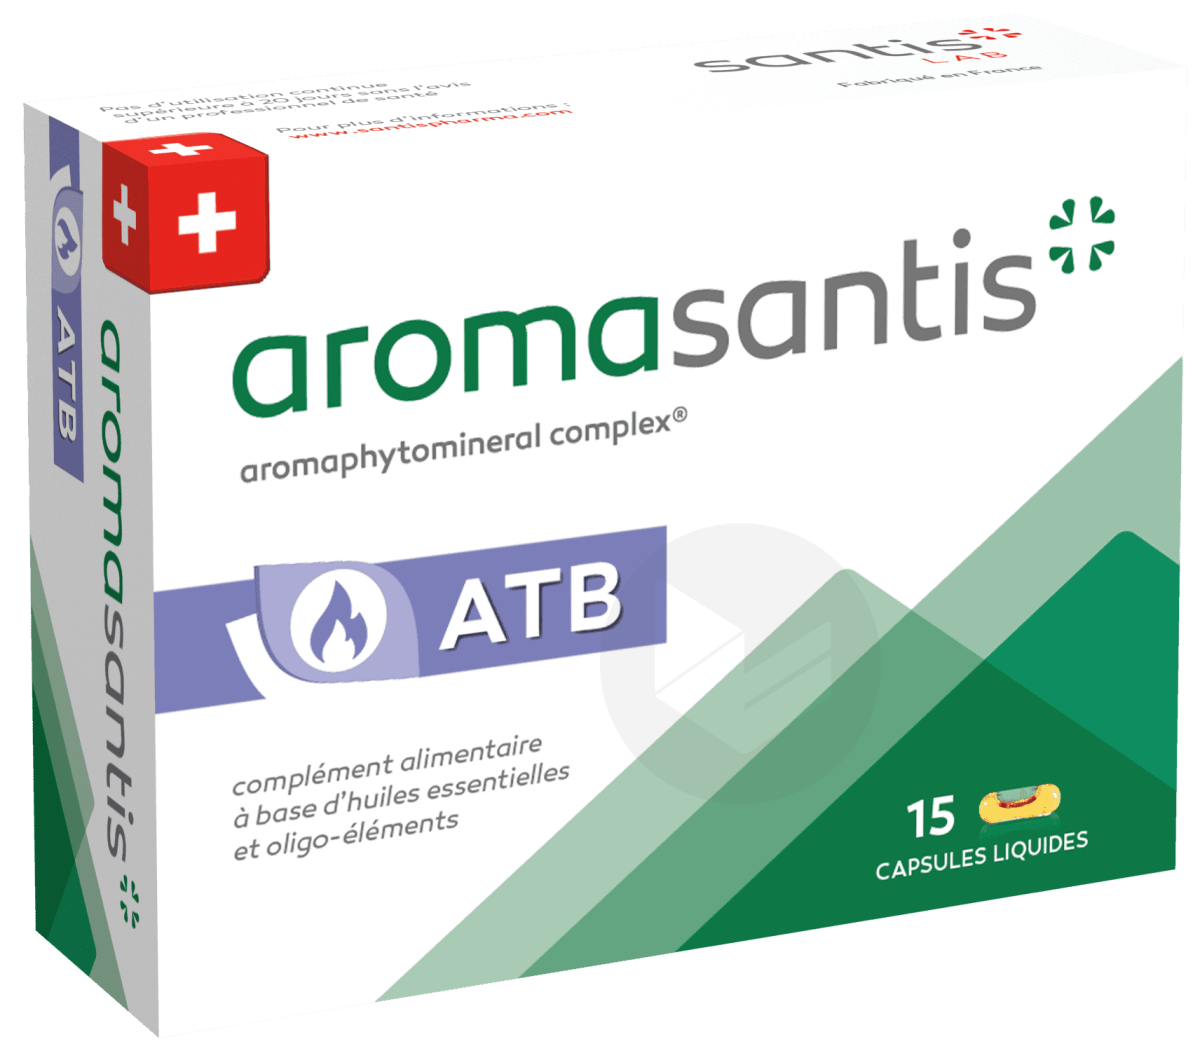 Aromasantis ATB 15 capsules